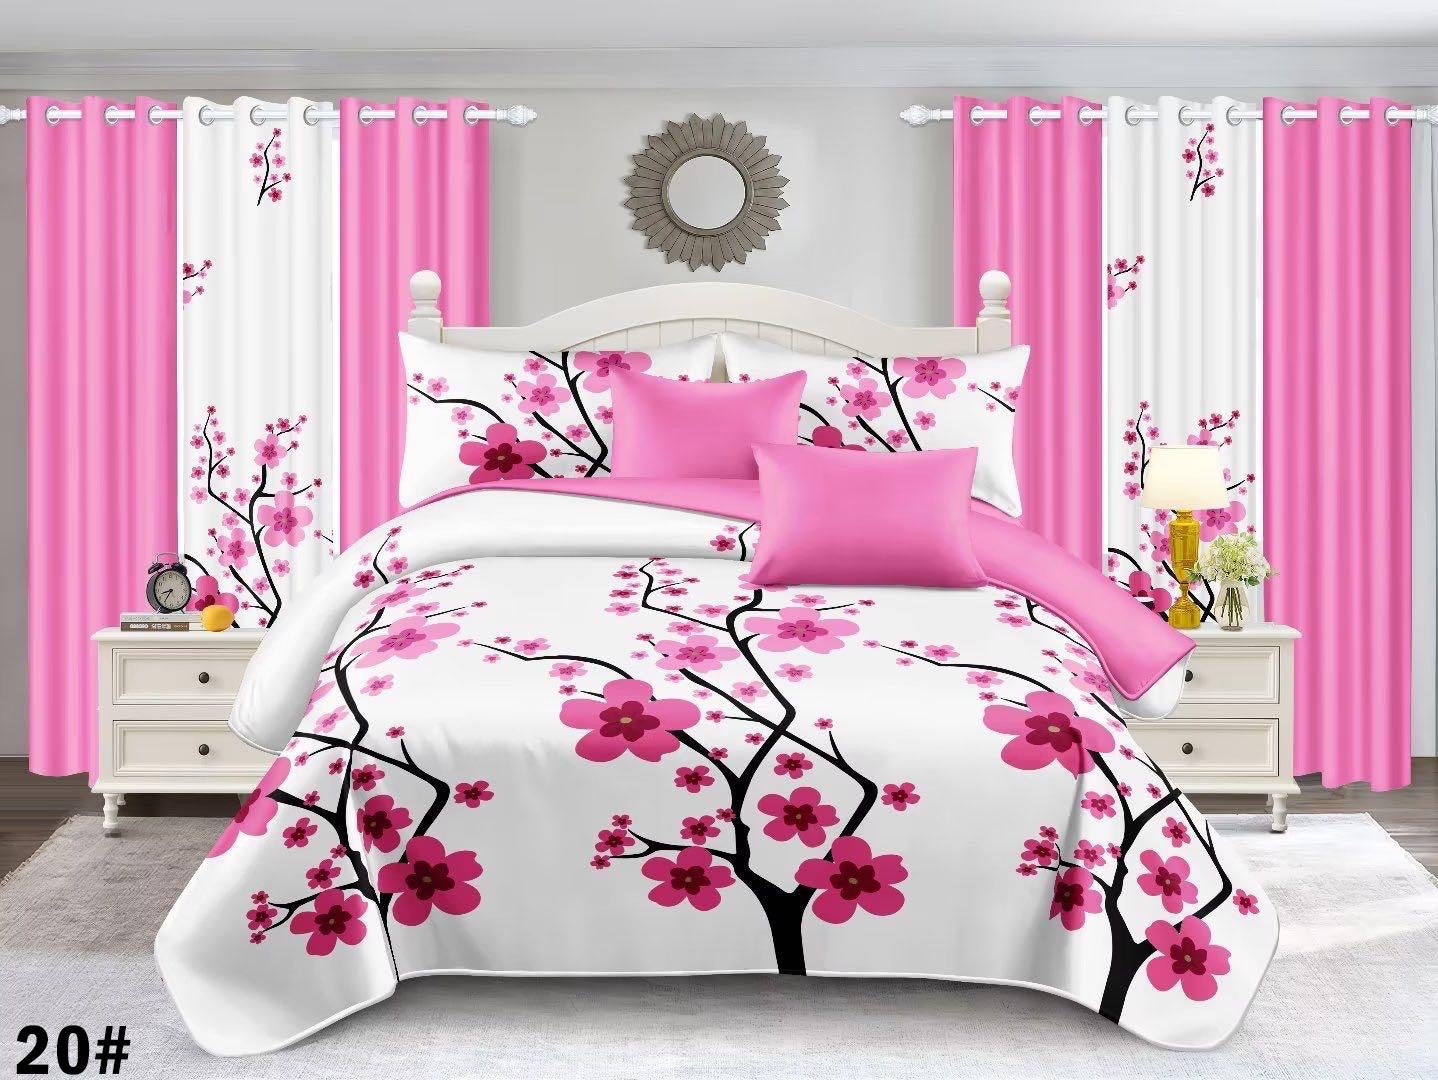 Bedspread & Comforter Sets